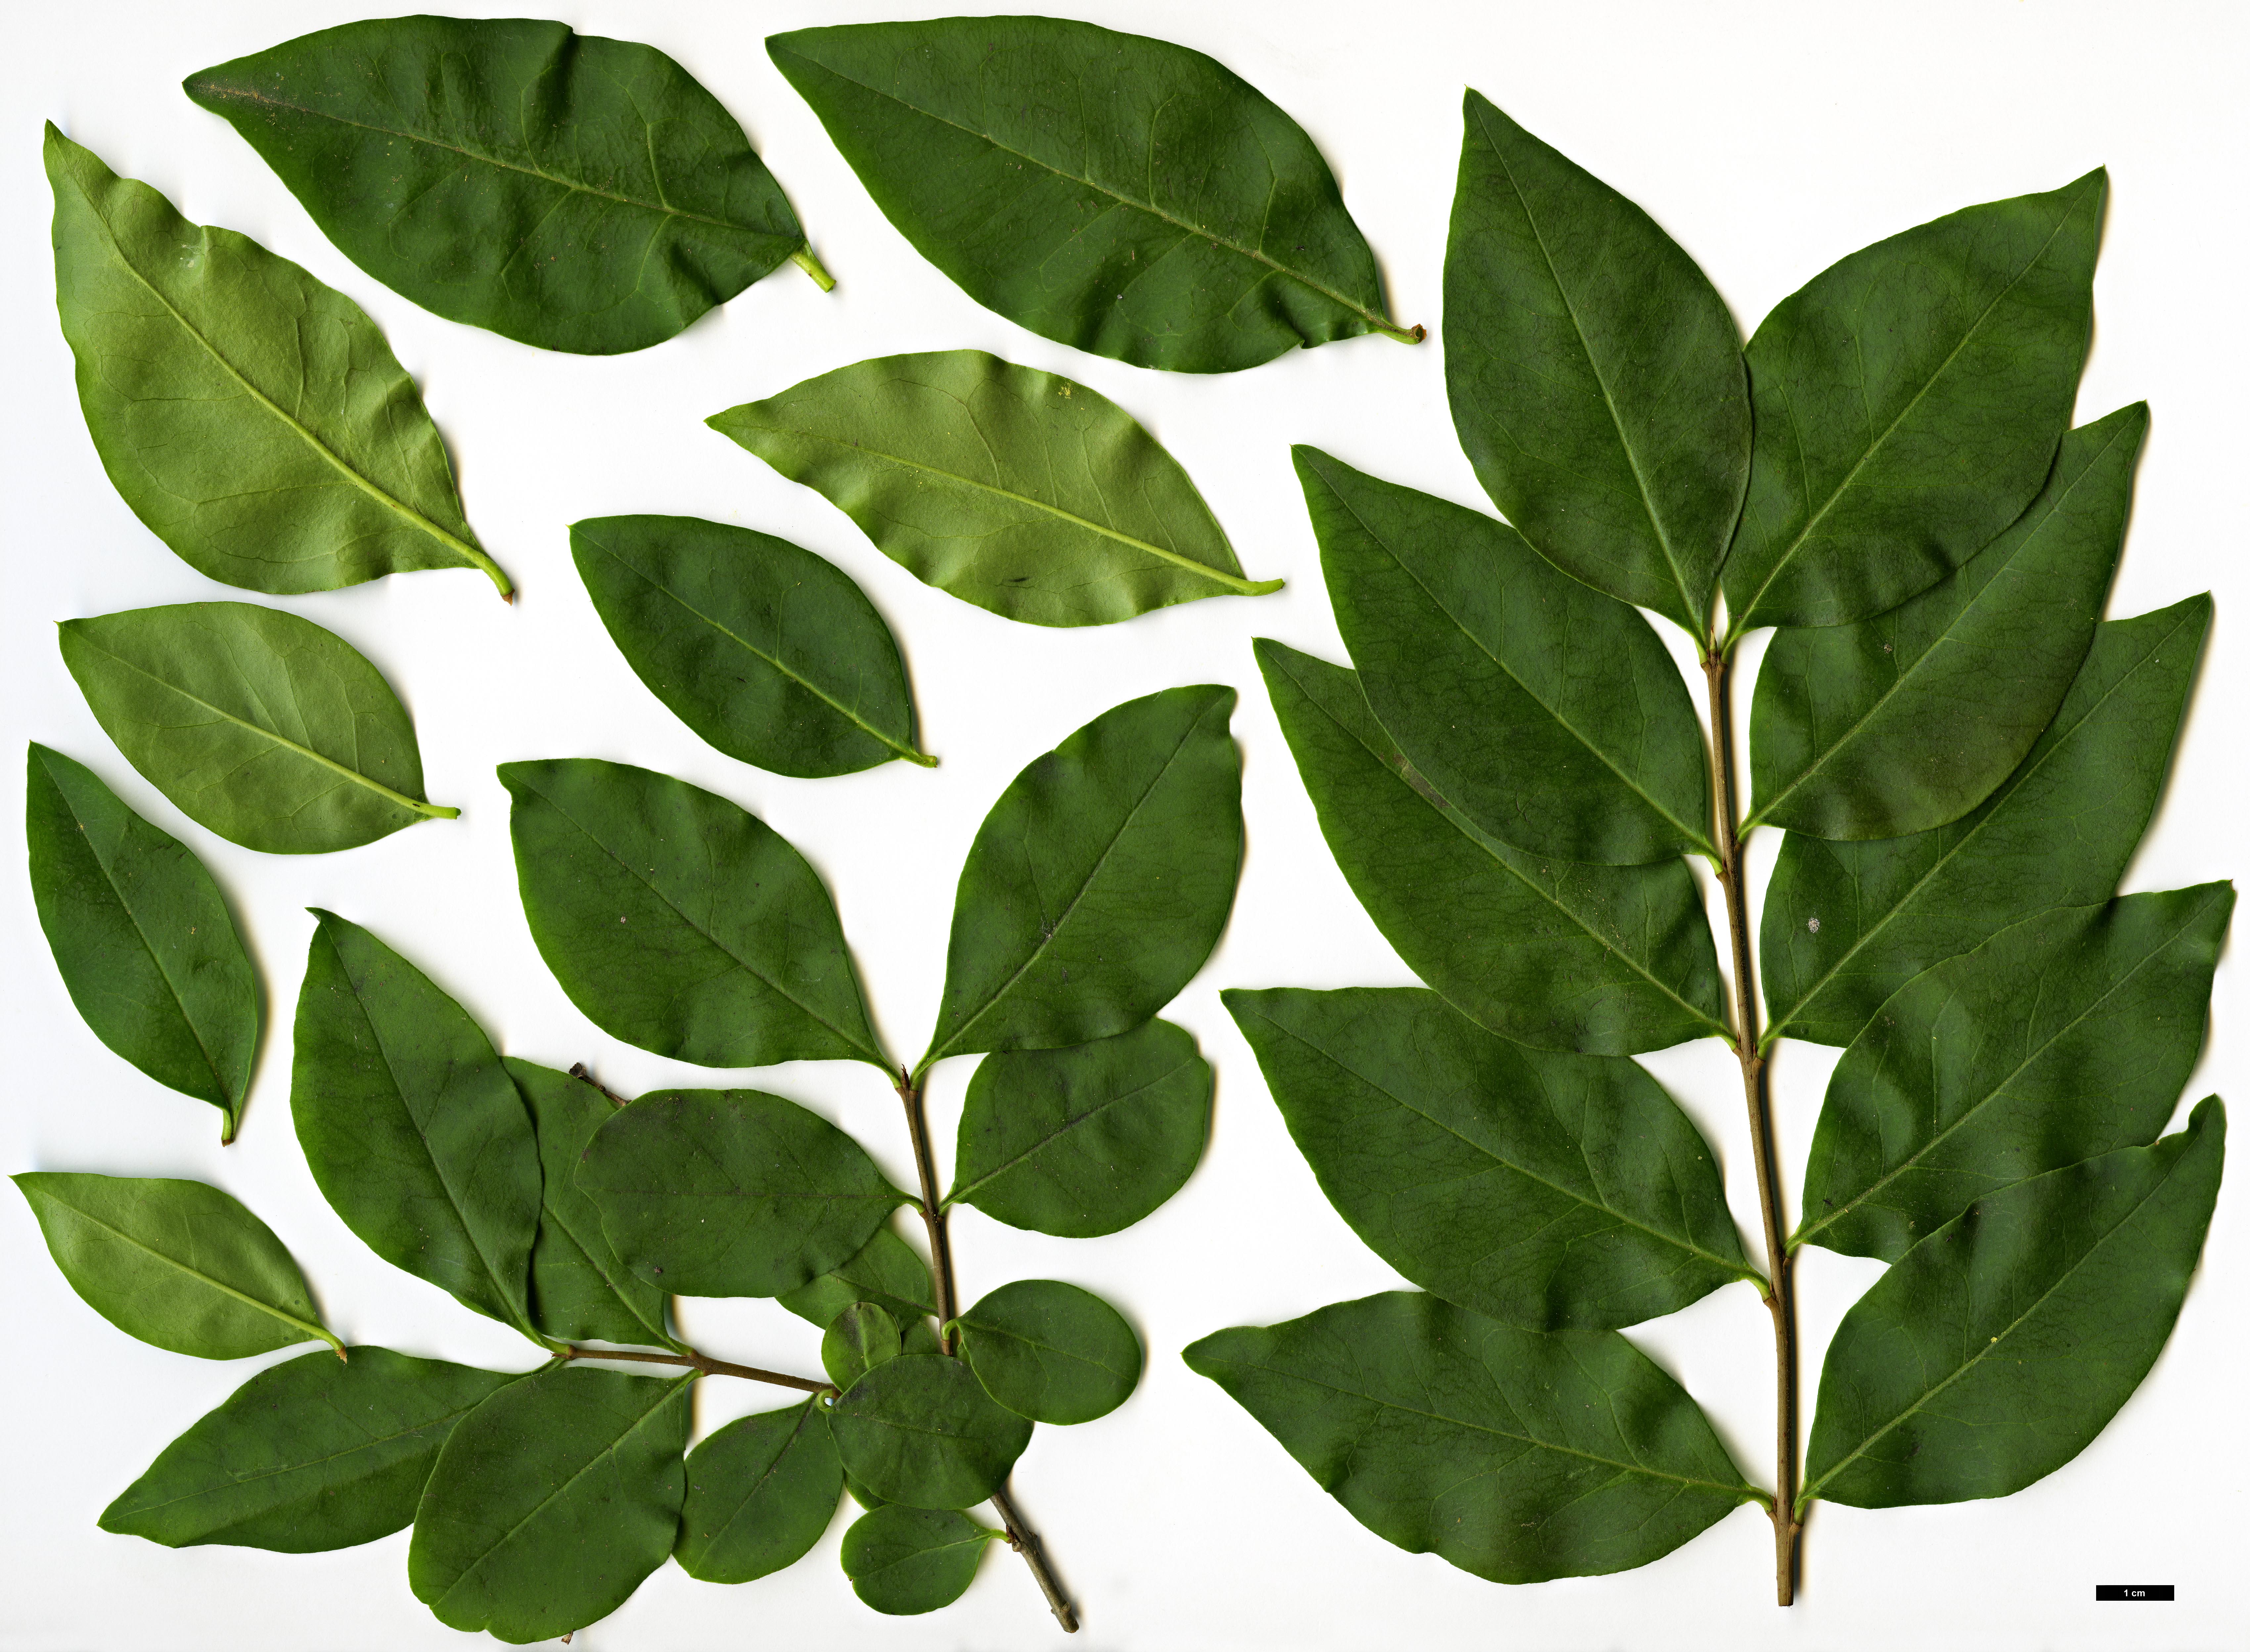 High resolution image: Family: Oleaceae - Genus: Ligustrum - Taxon: ovalifolium